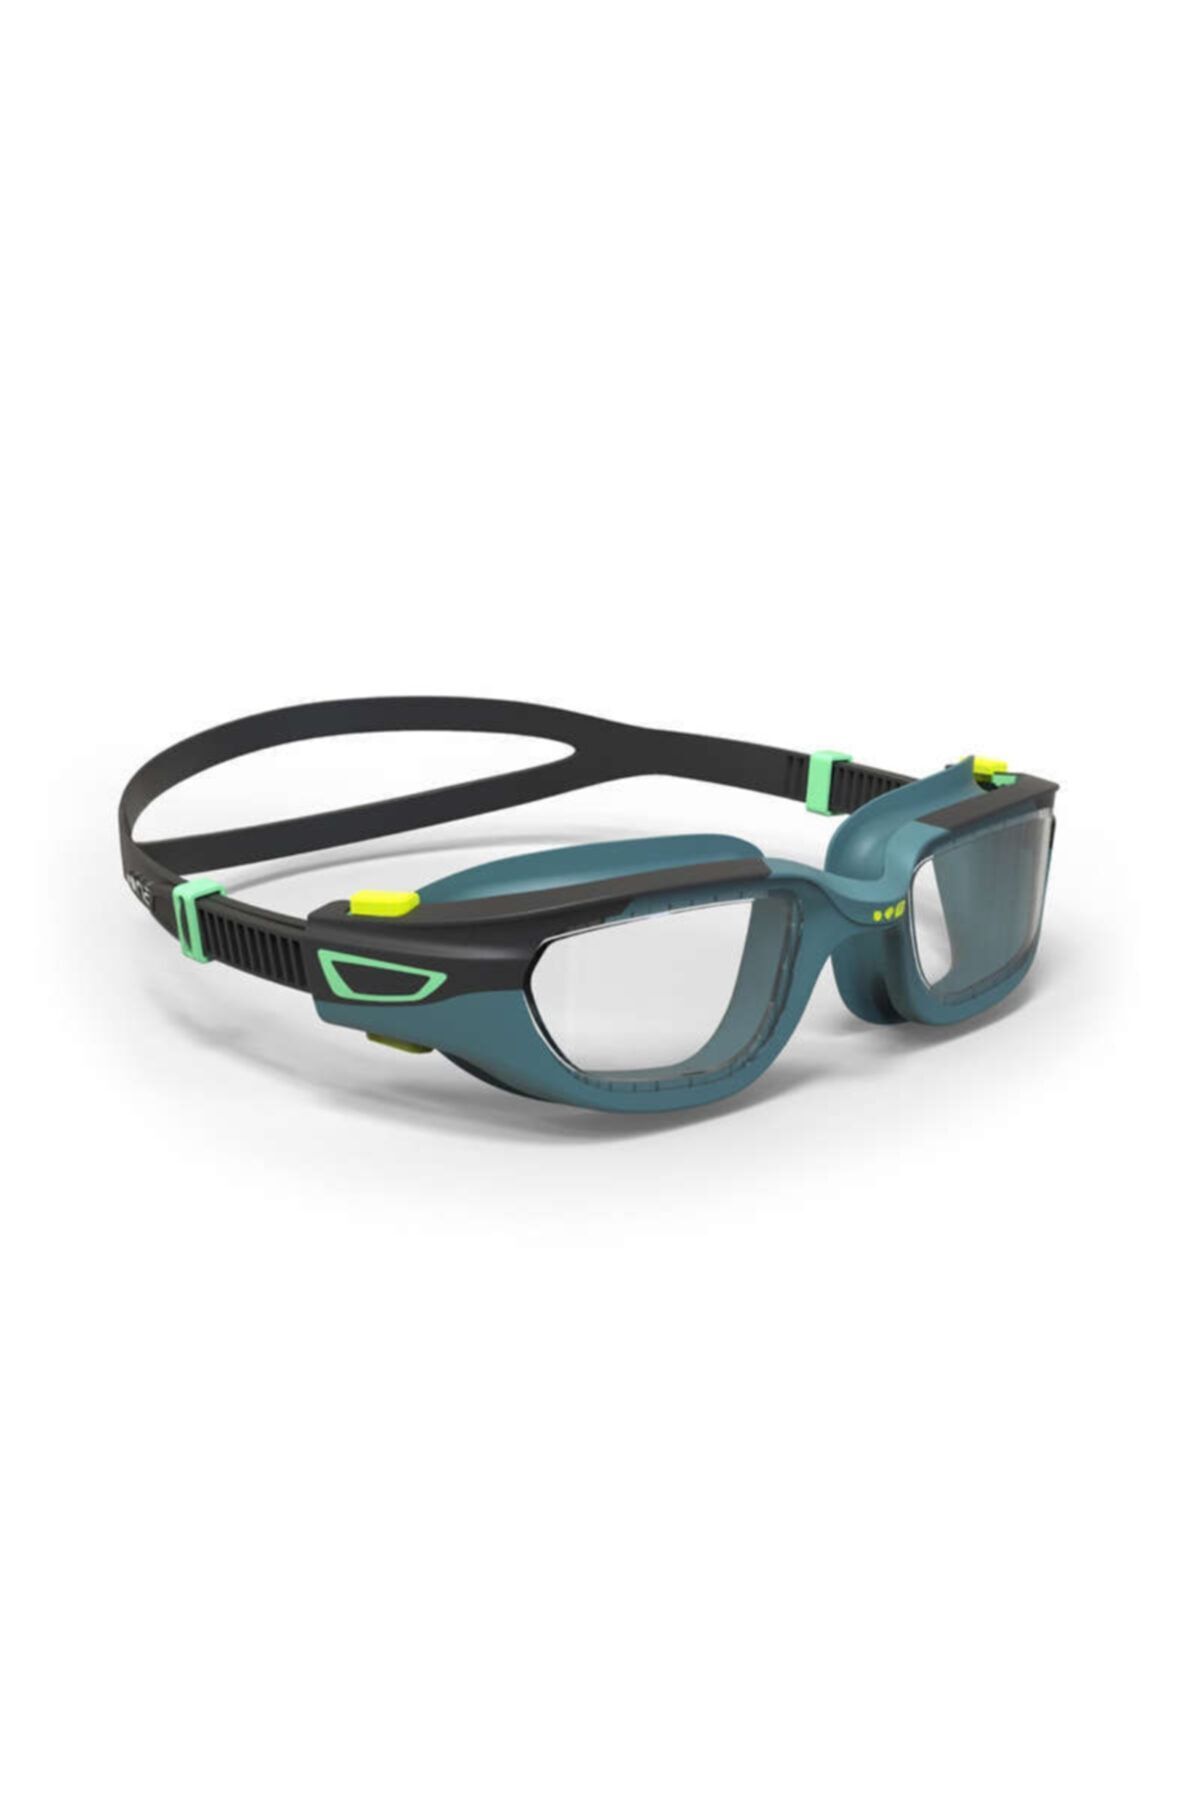 Decathlon Mavi Nabaiji Yüzücü Gözlüğü - Siyah / Mavi - Şeffaf Camlar - S Boy - Spırıt